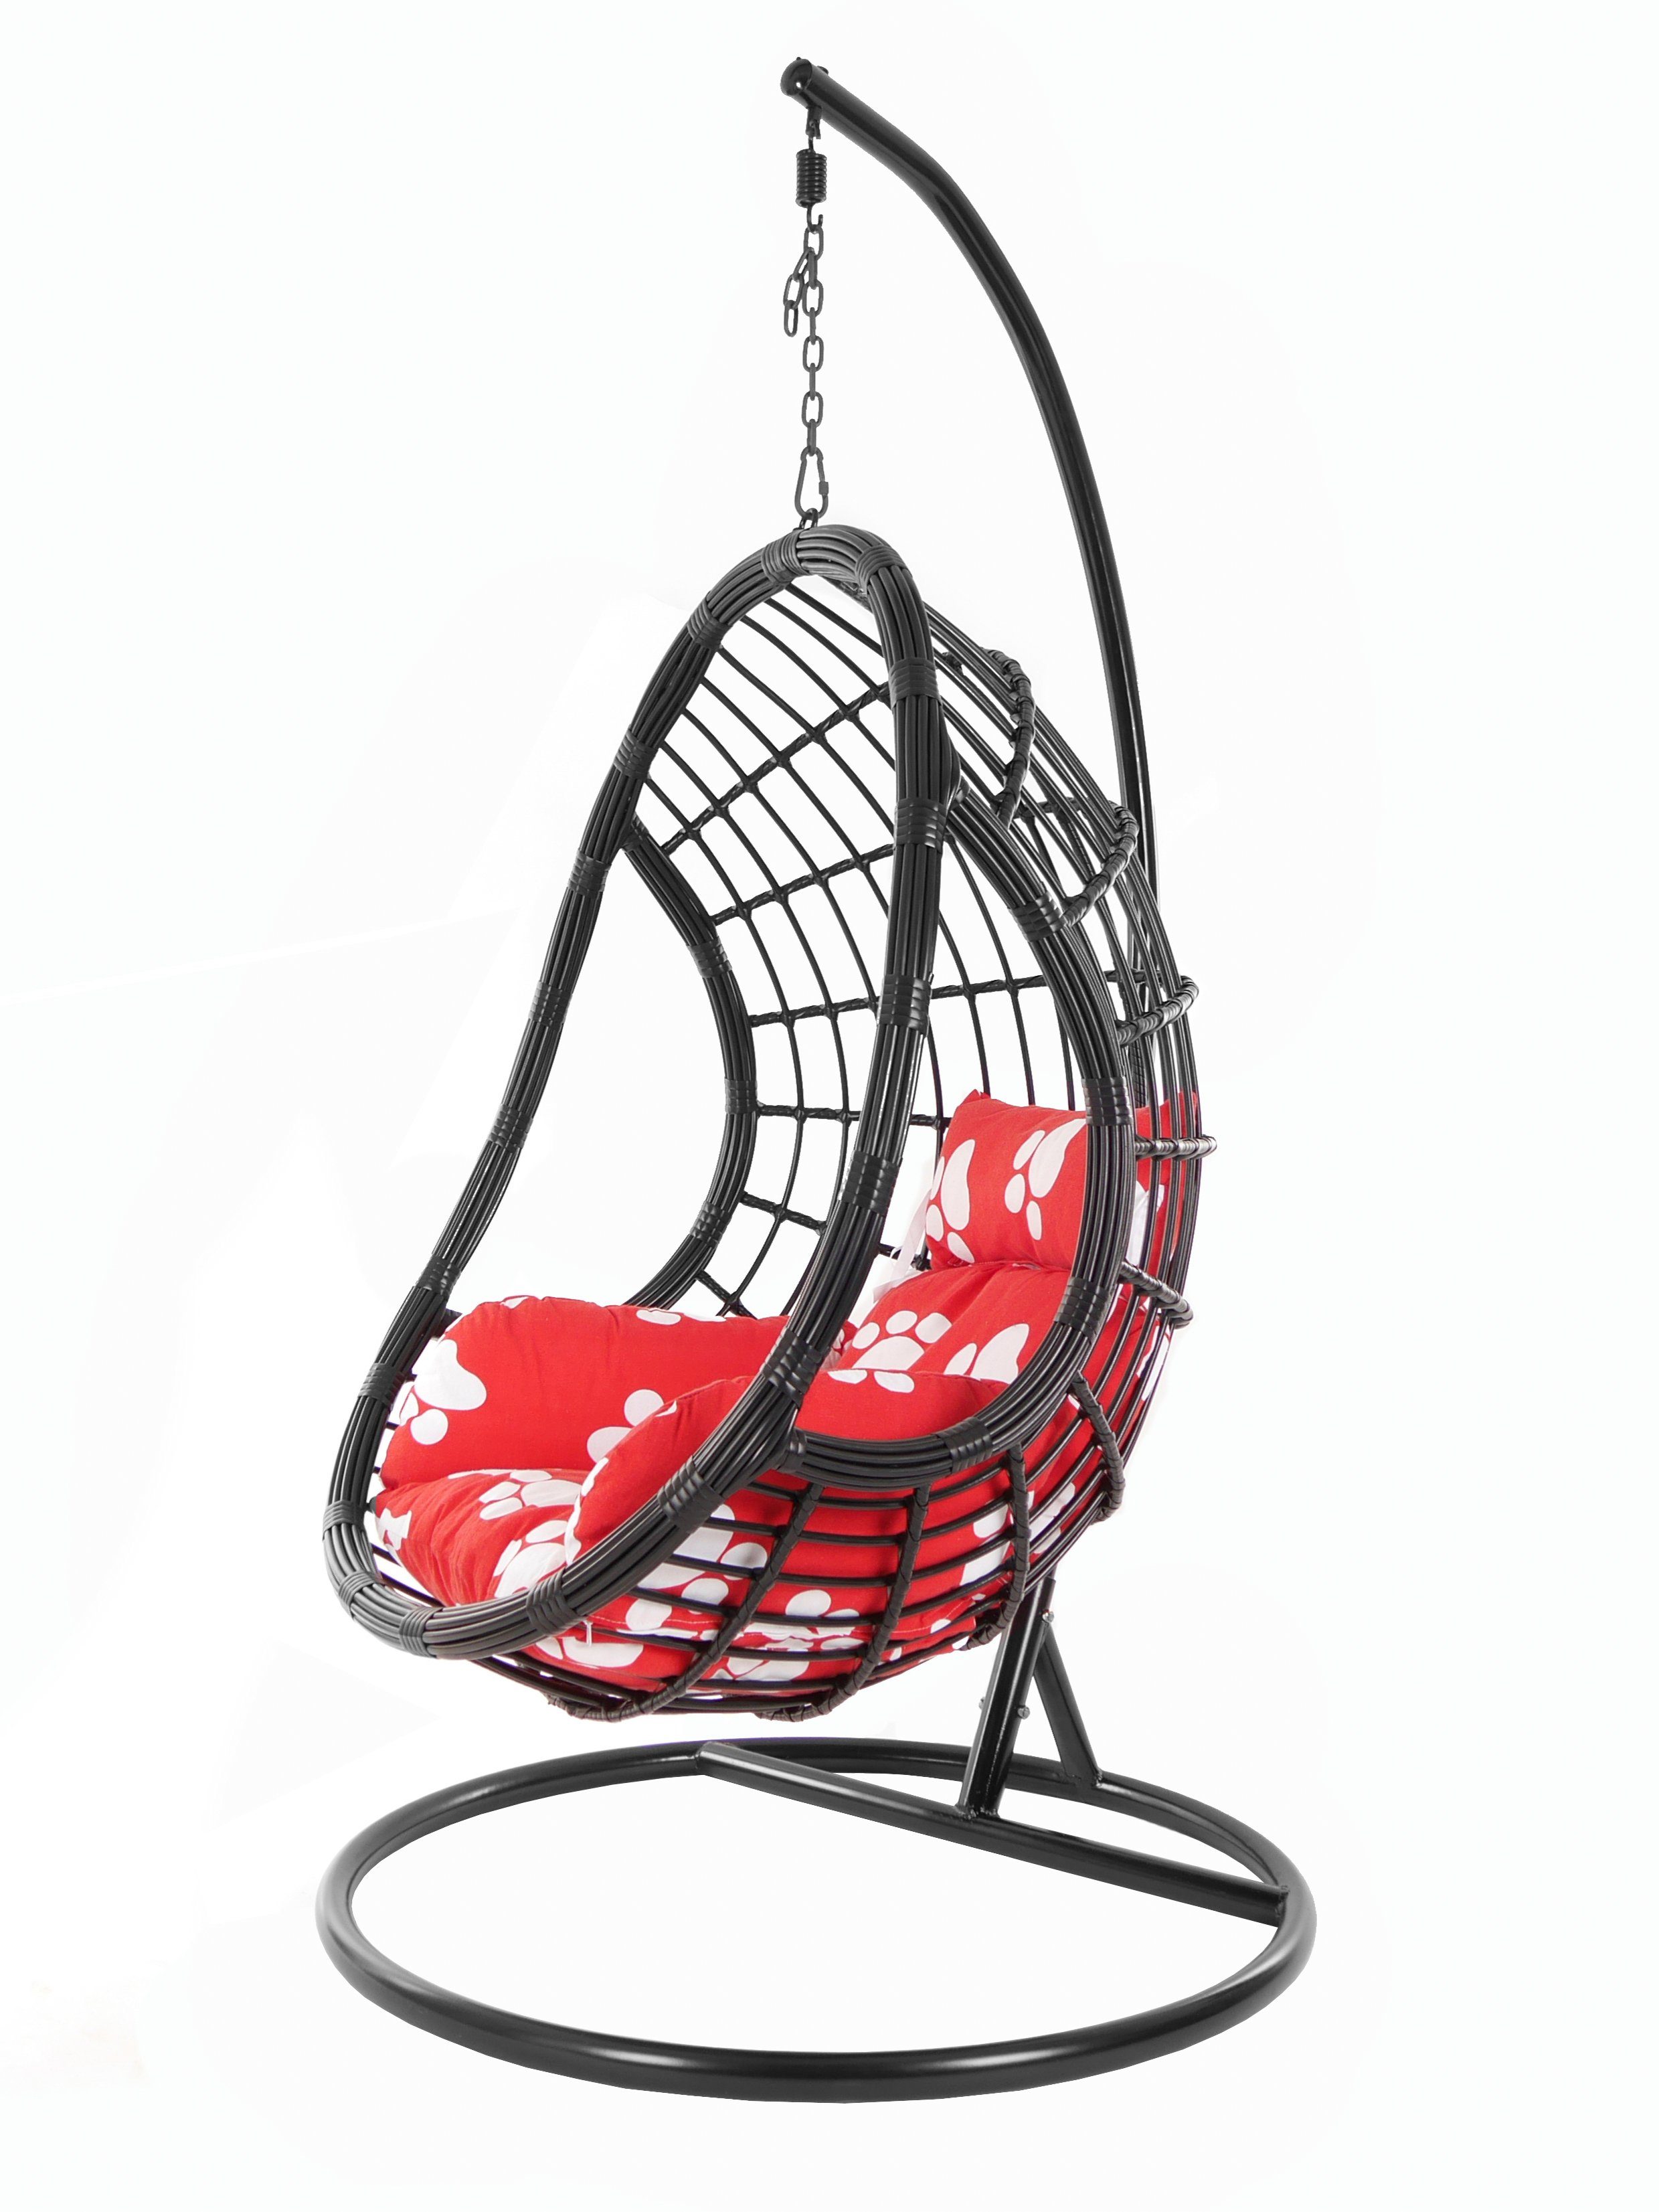 (3011 Muster Hängesessel Gestell Chair, black, Schwebesessel, pfoten mit und Loungemöbel, Schwarz, paw) PALMANOVA Swing KIDEO Hängesessel Kissen,